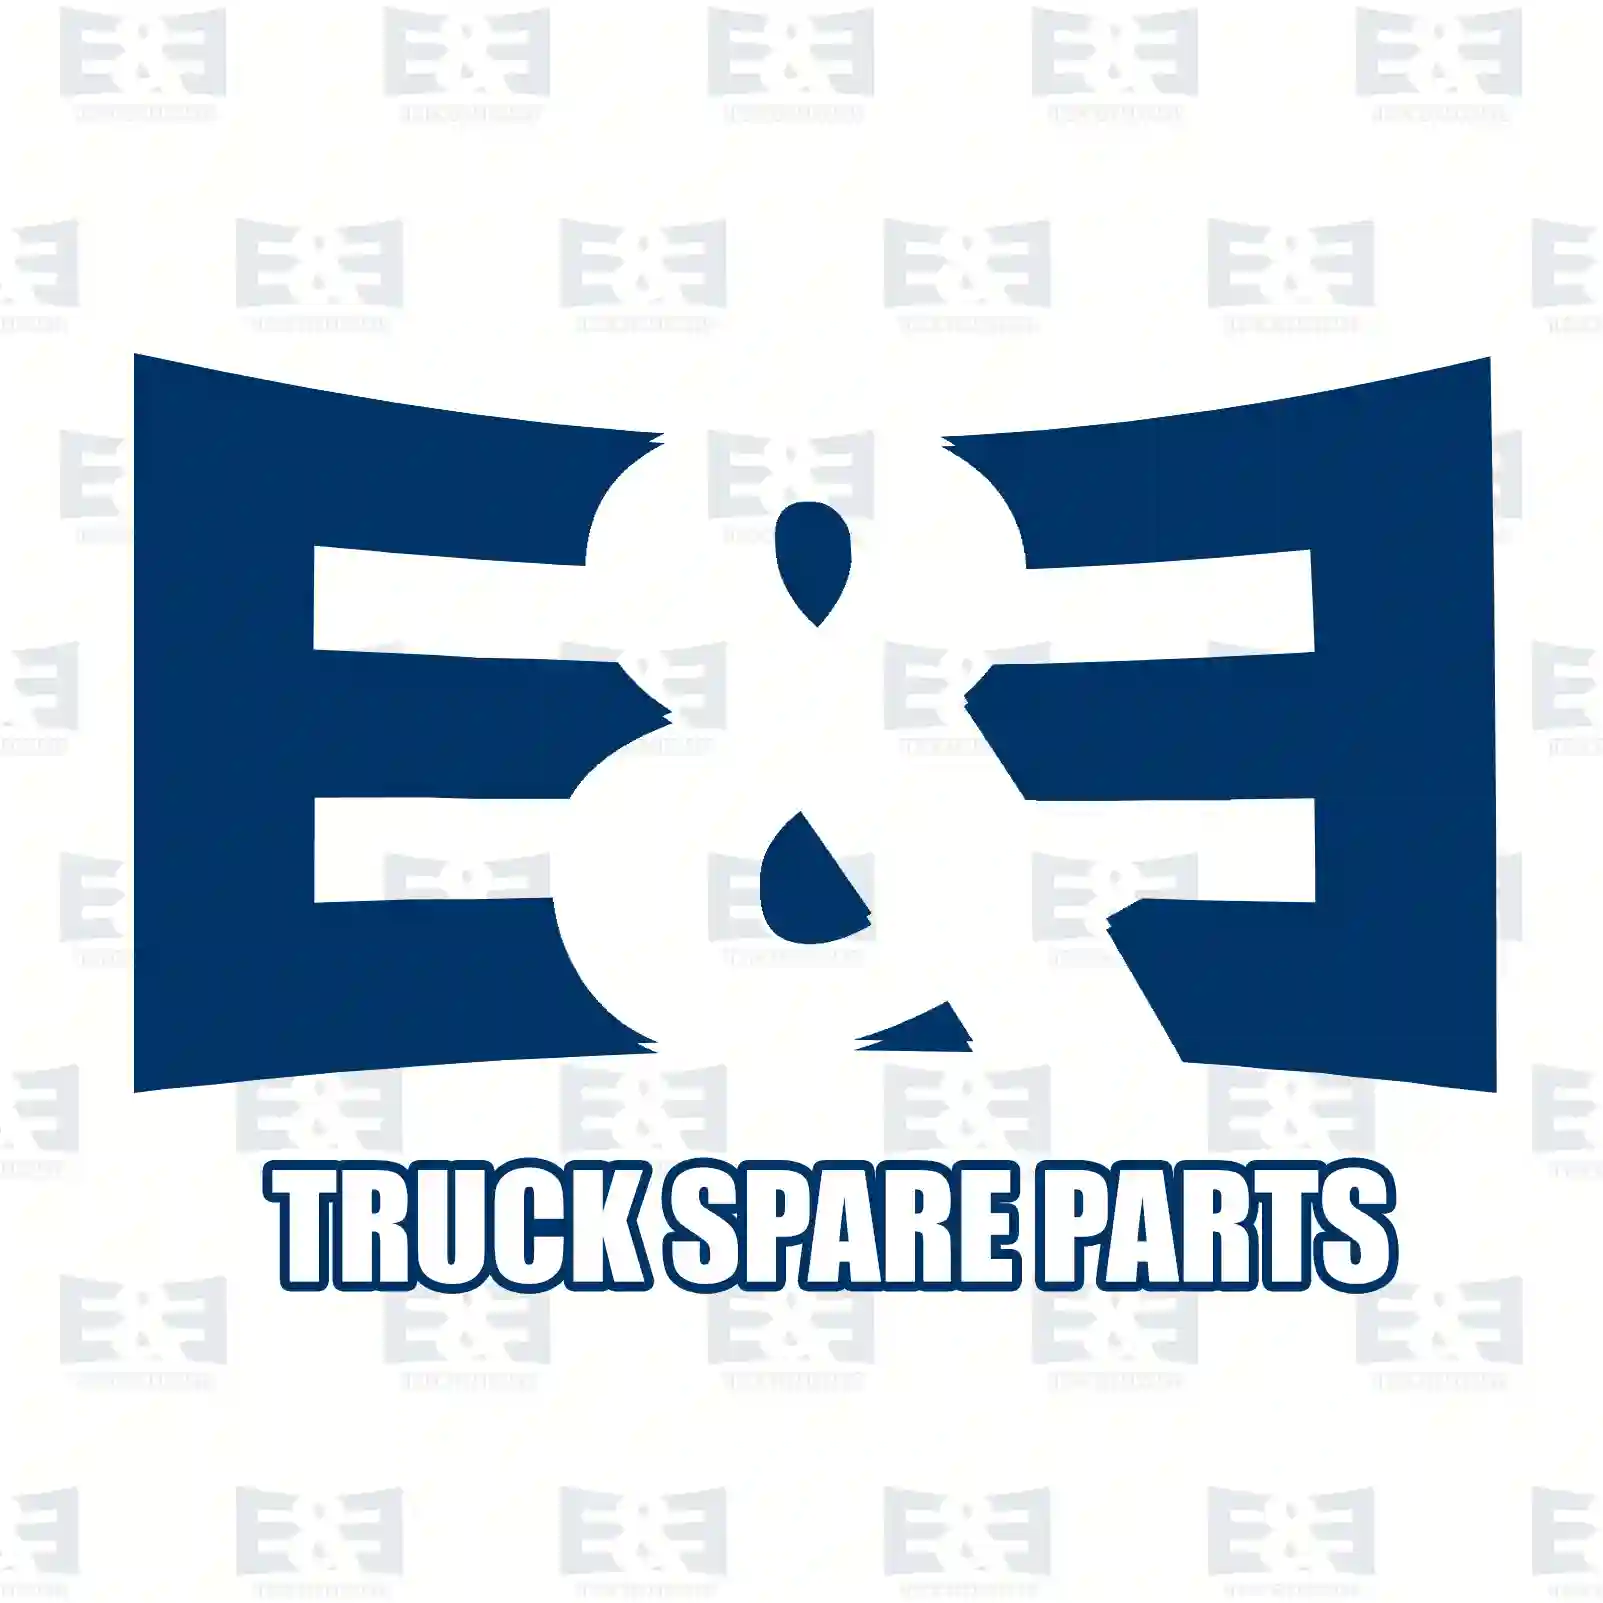 Screw, 2E2281367, 7400959263, 959263, ZG41499-0008, ||  2E2281367 E&E Truck Spare Parts | Truck Spare Parts, Auotomotive Spare Parts Screw, 2E2281367, 7400959263, 959263, ZG41499-0008, ||  2E2281367 E&E Truck Spare Parts | Truck Spare Parts, Auotomotive Spare Parts